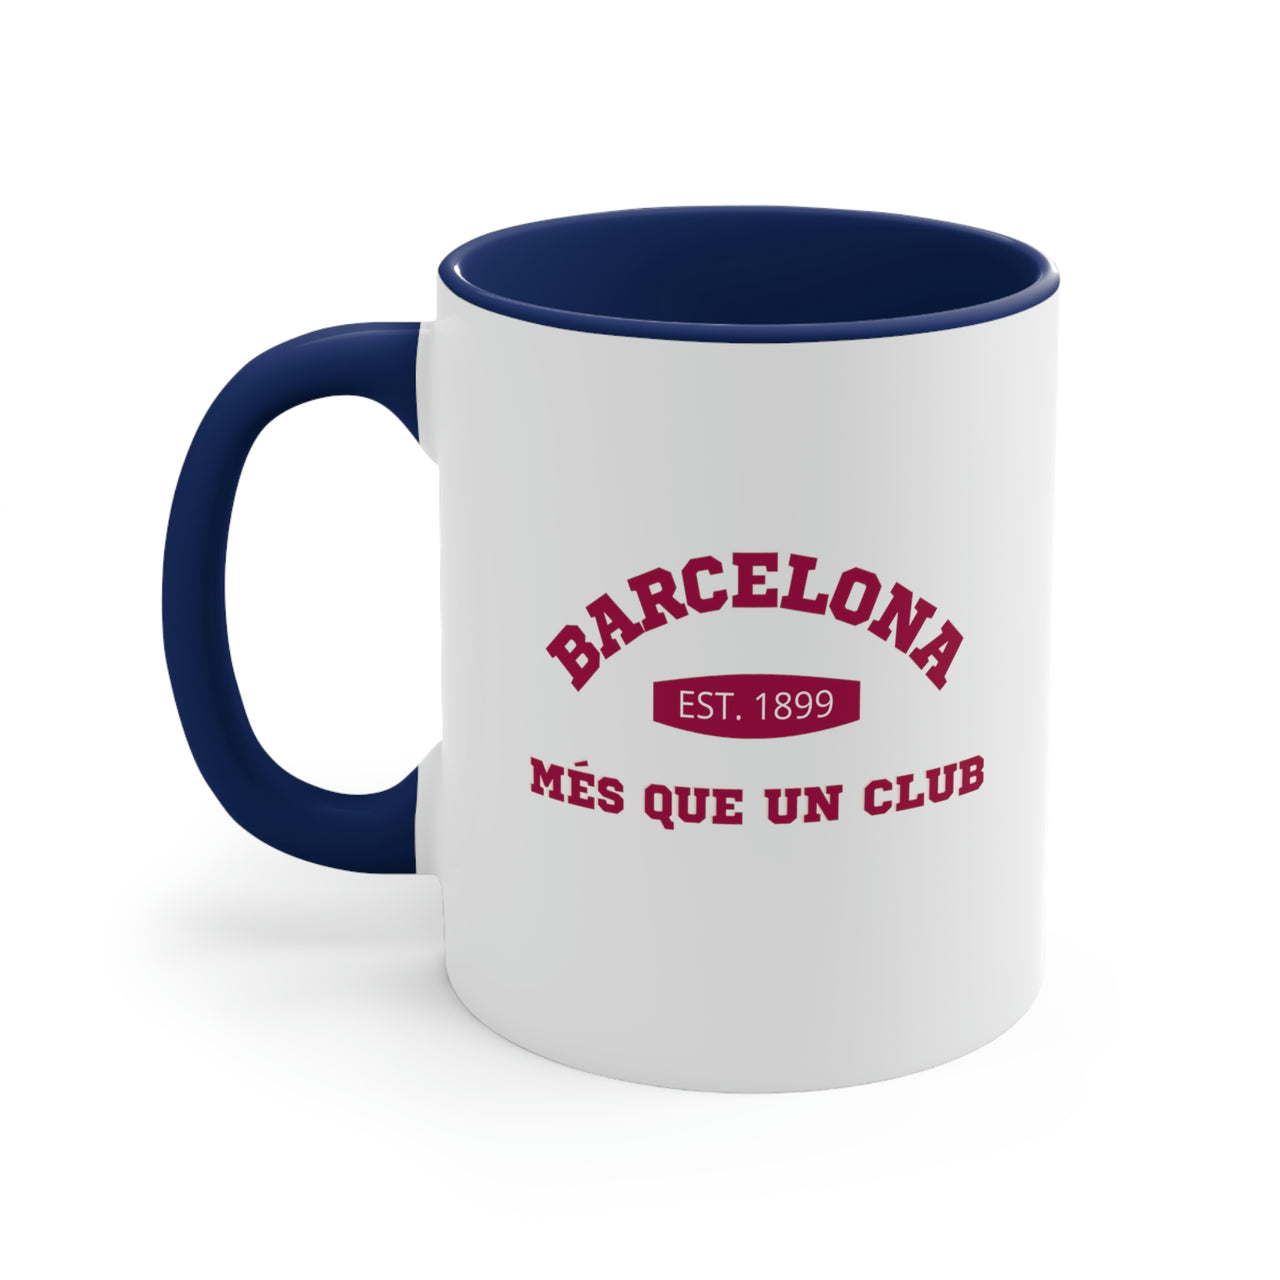 Barcelona Coffee Mug, 11oz